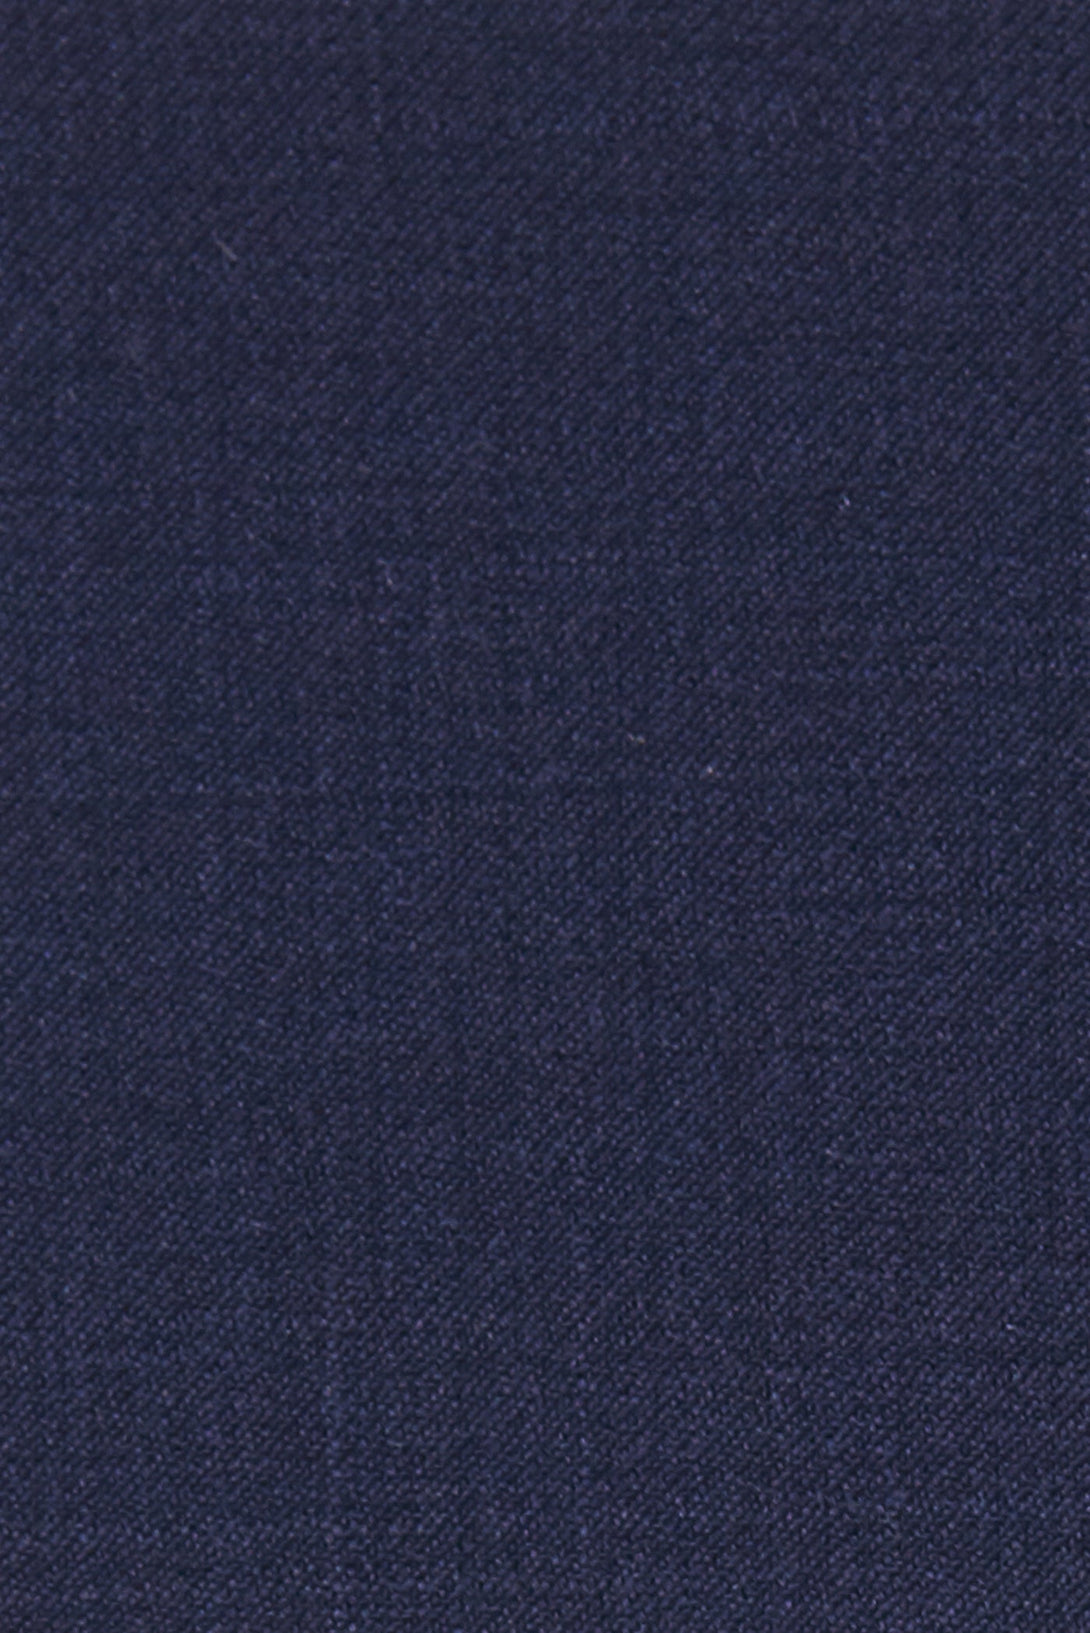 Low Cut Navy Wool Vest-The Suit Spot